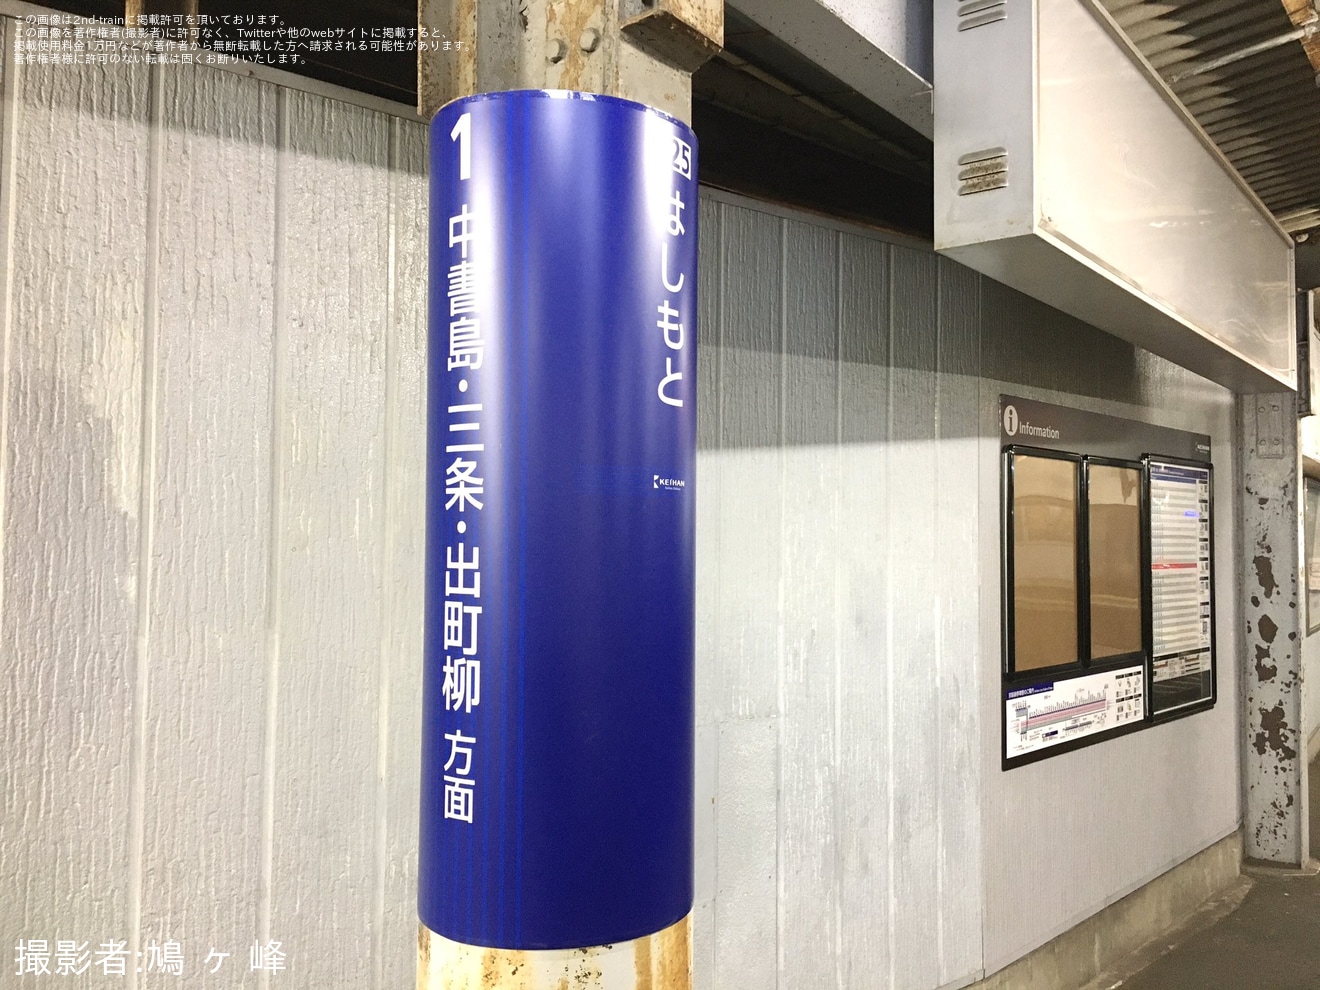 【京阪】橋本駅の駅のサインが更新の拡大写真